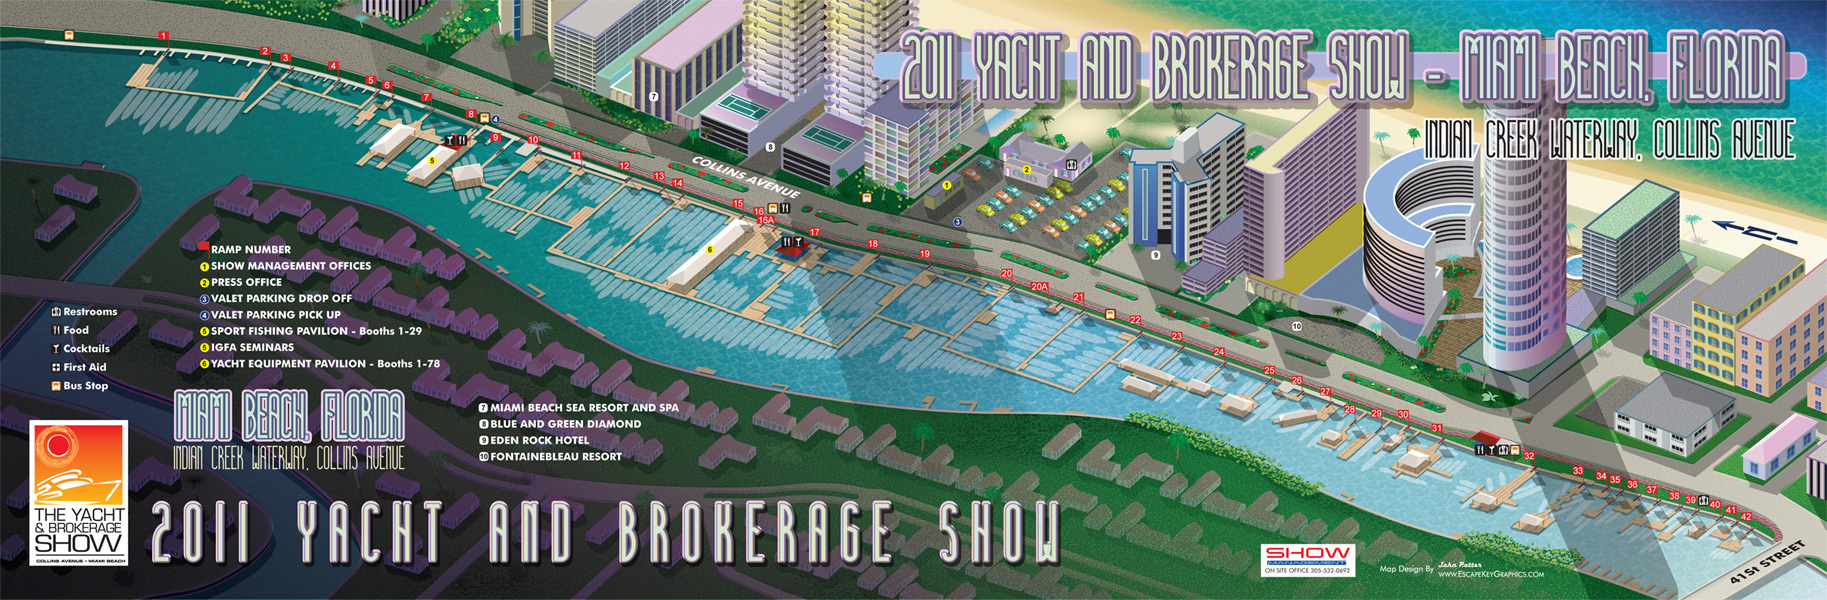 Miami Boat Show Maps